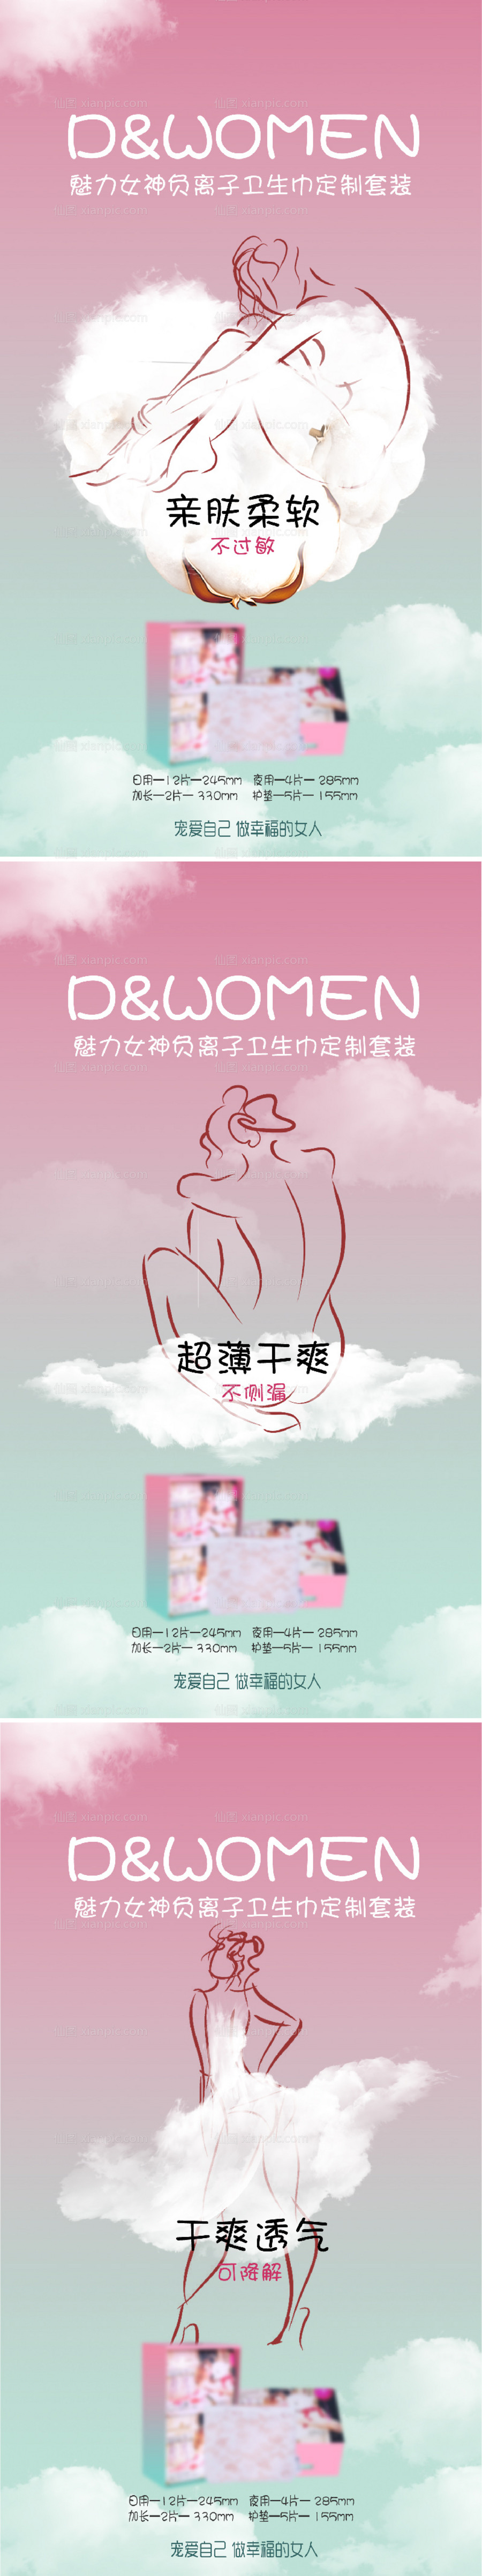 素材乐-女性卫生巾海报